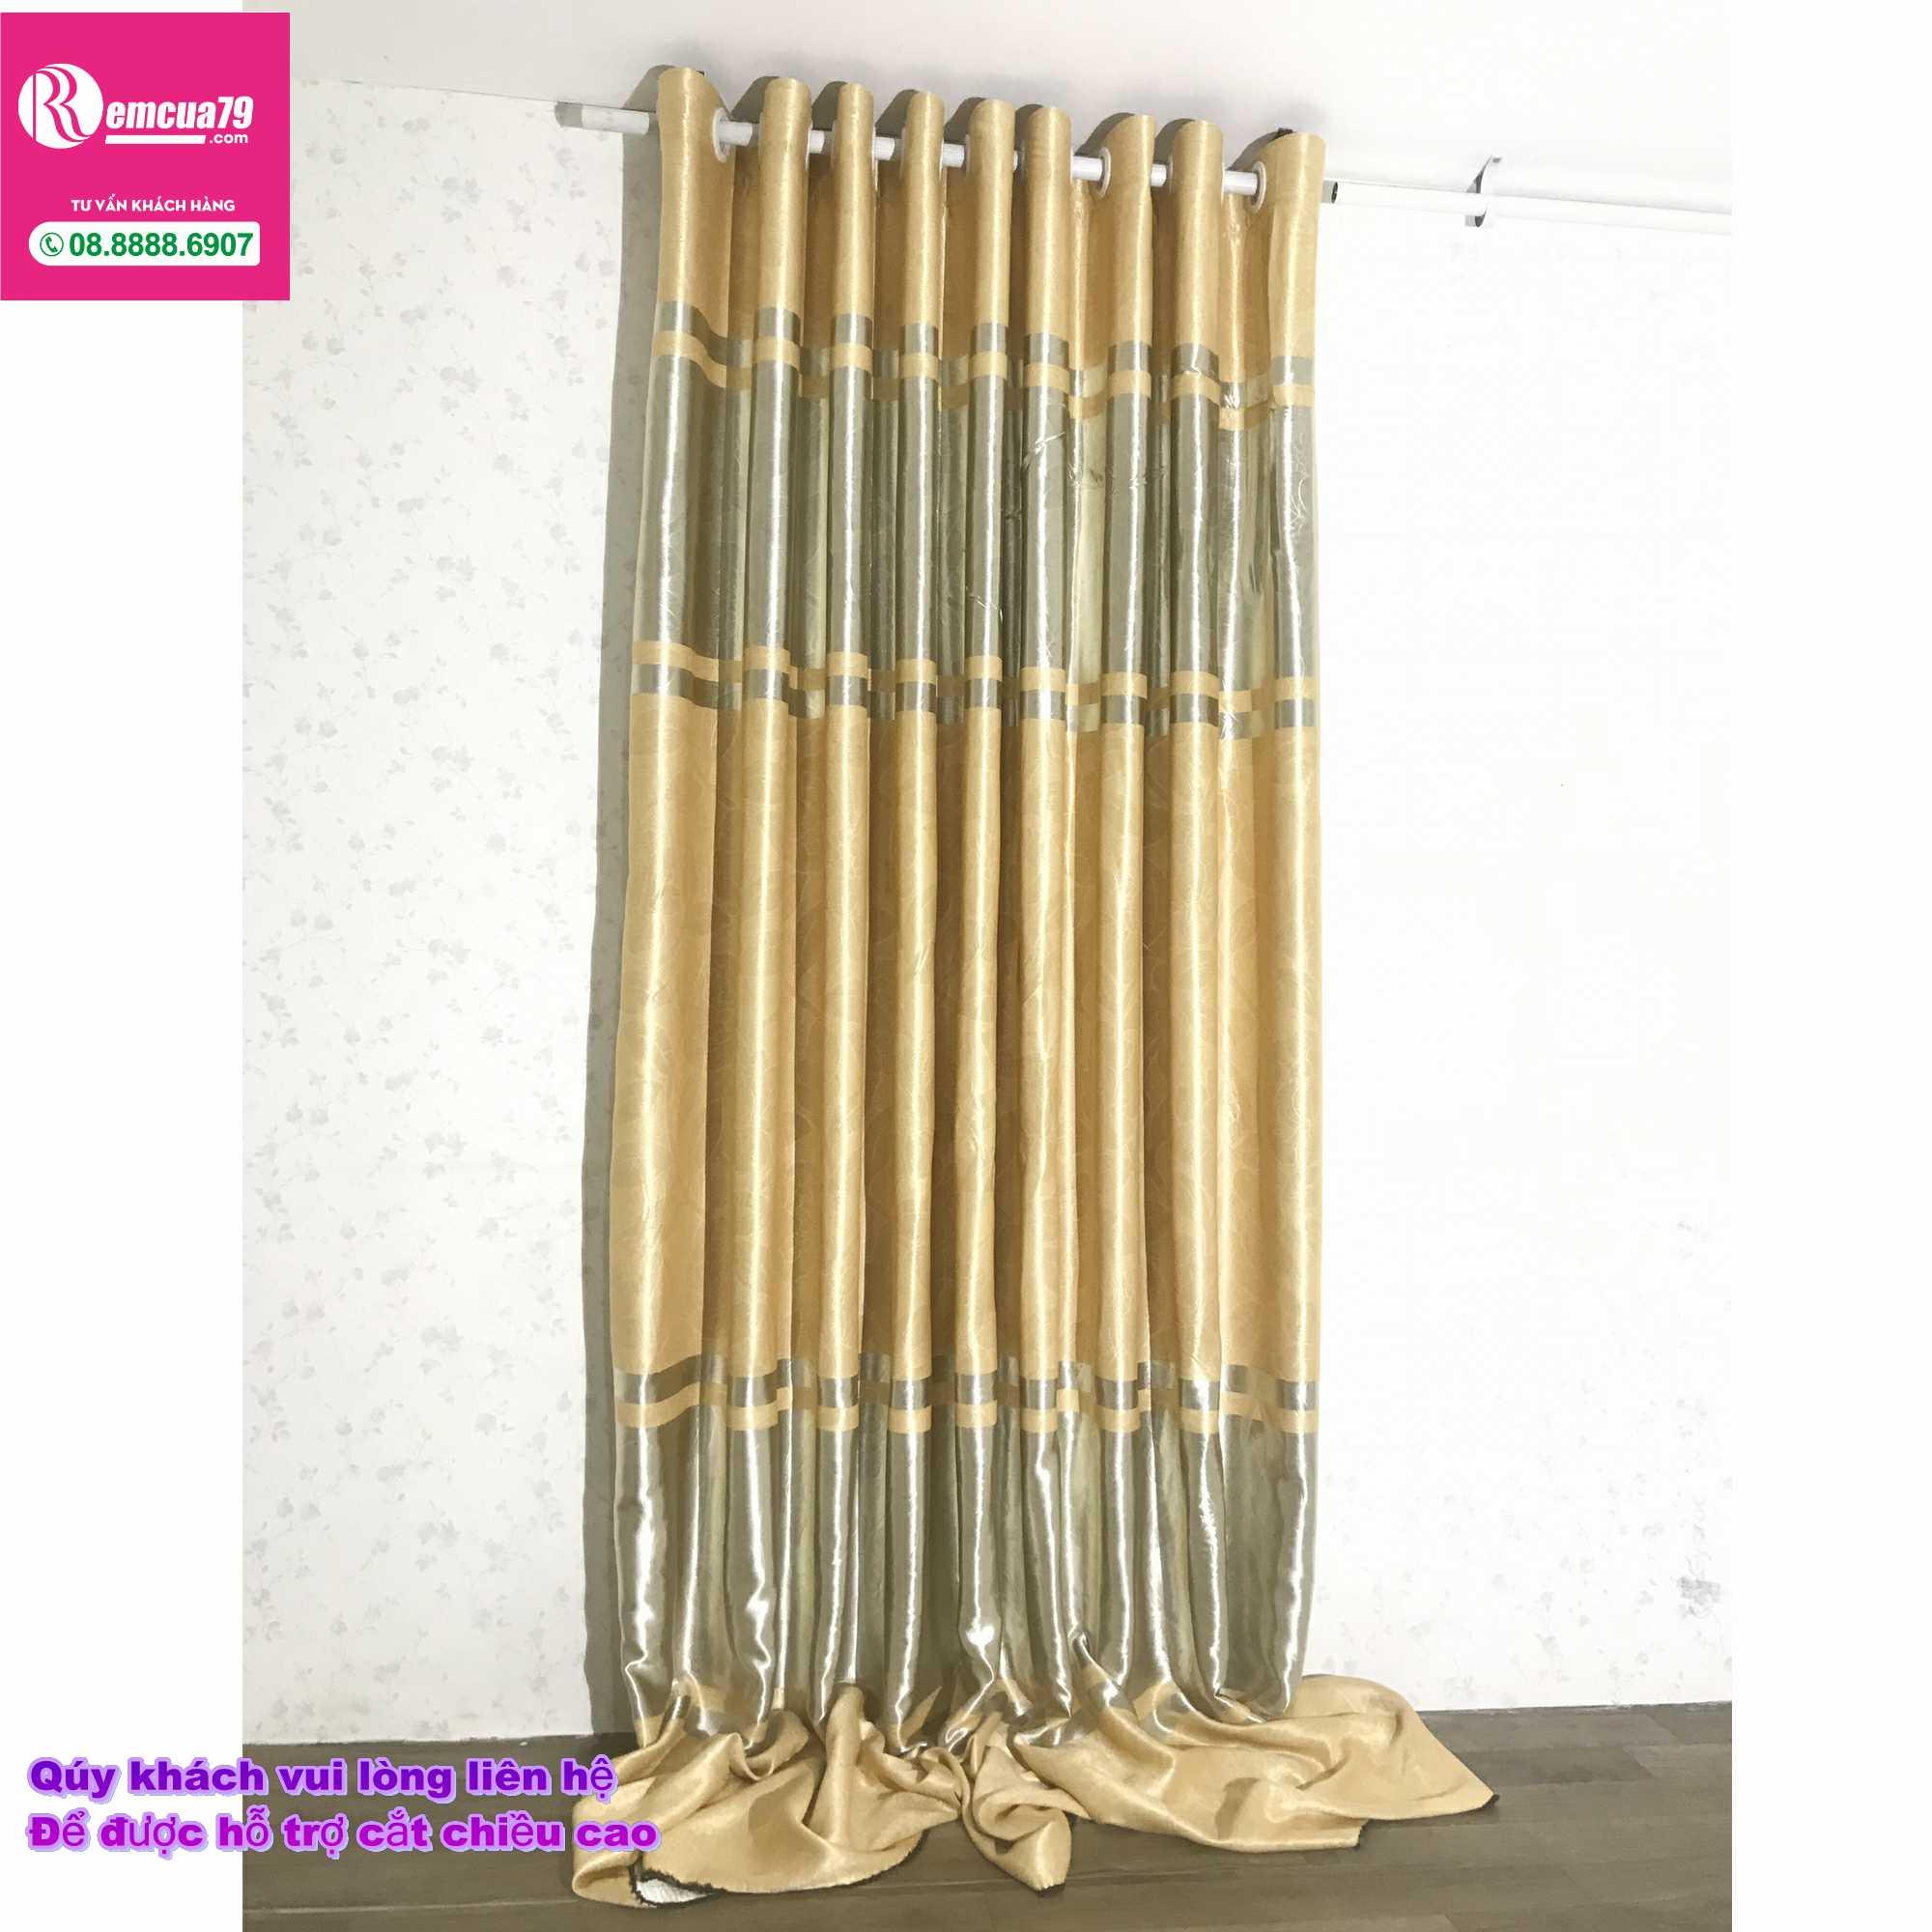 Rèm, màn cửa Ph curtains( ngang200cm x cao 130cm) Màu Vàng xám nhẹ hoa văn chìm + tặng dây vén màn